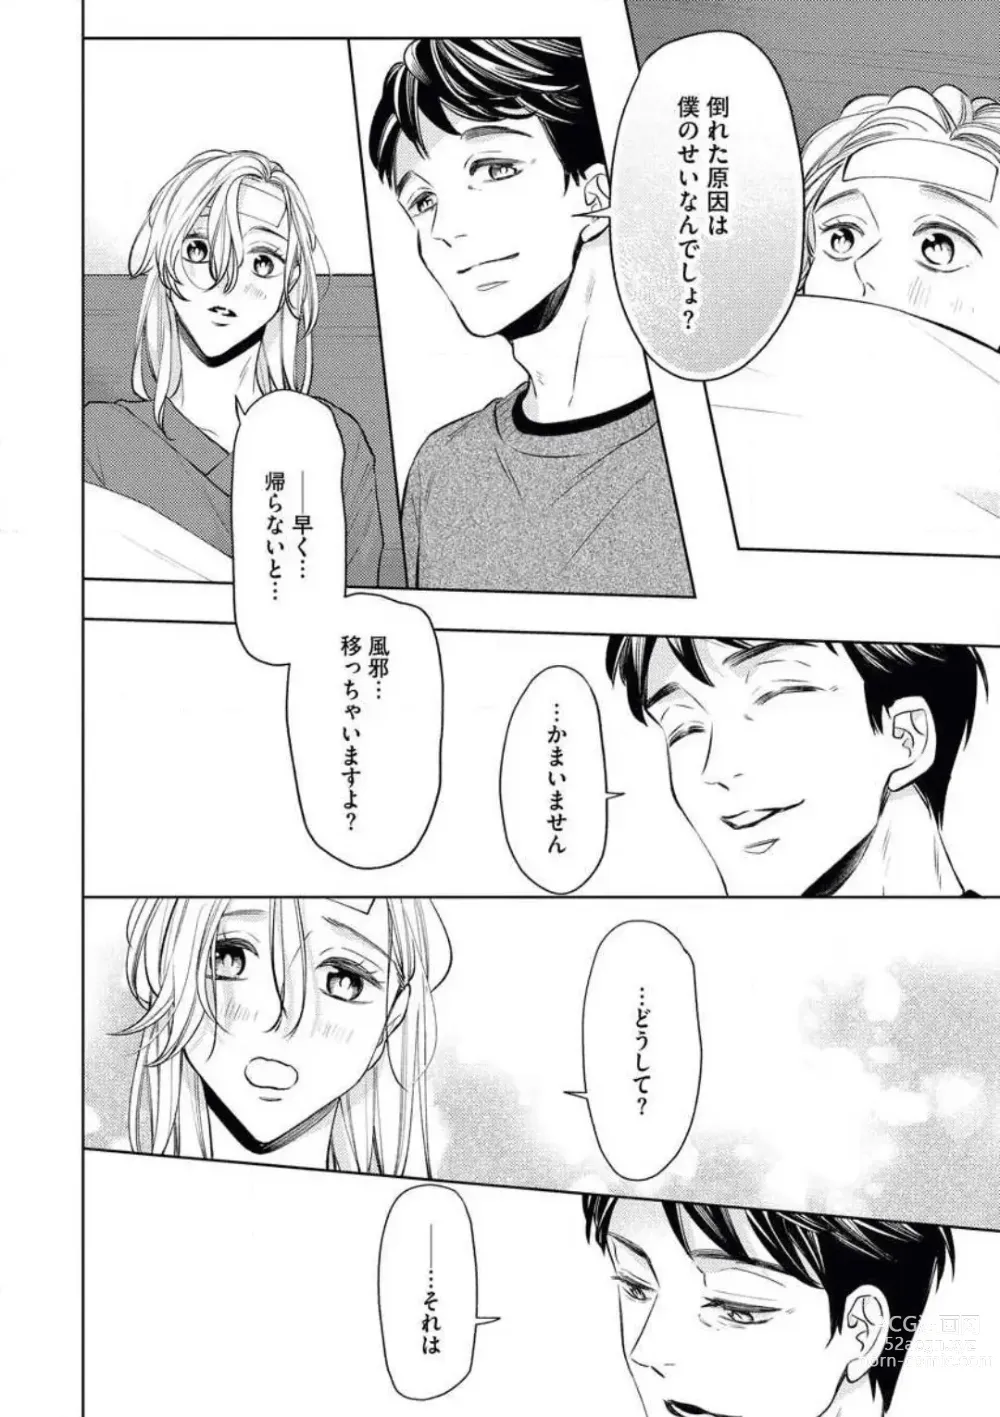 Page 24 of manga Anata o Kudasai!